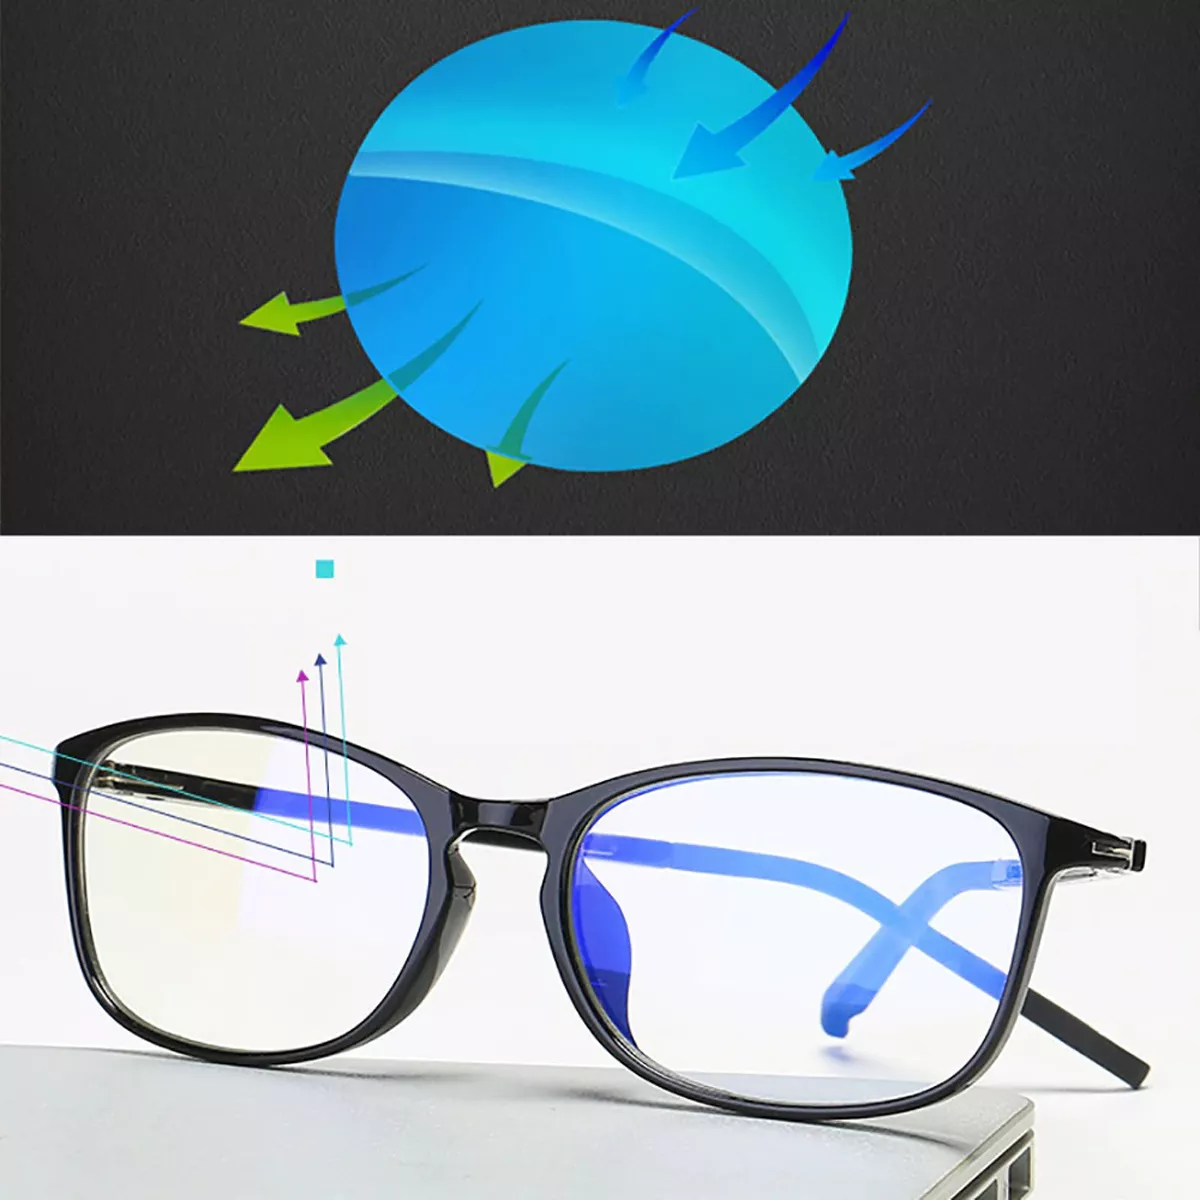 Primeira imagem para pesquisa de oculos luz azul